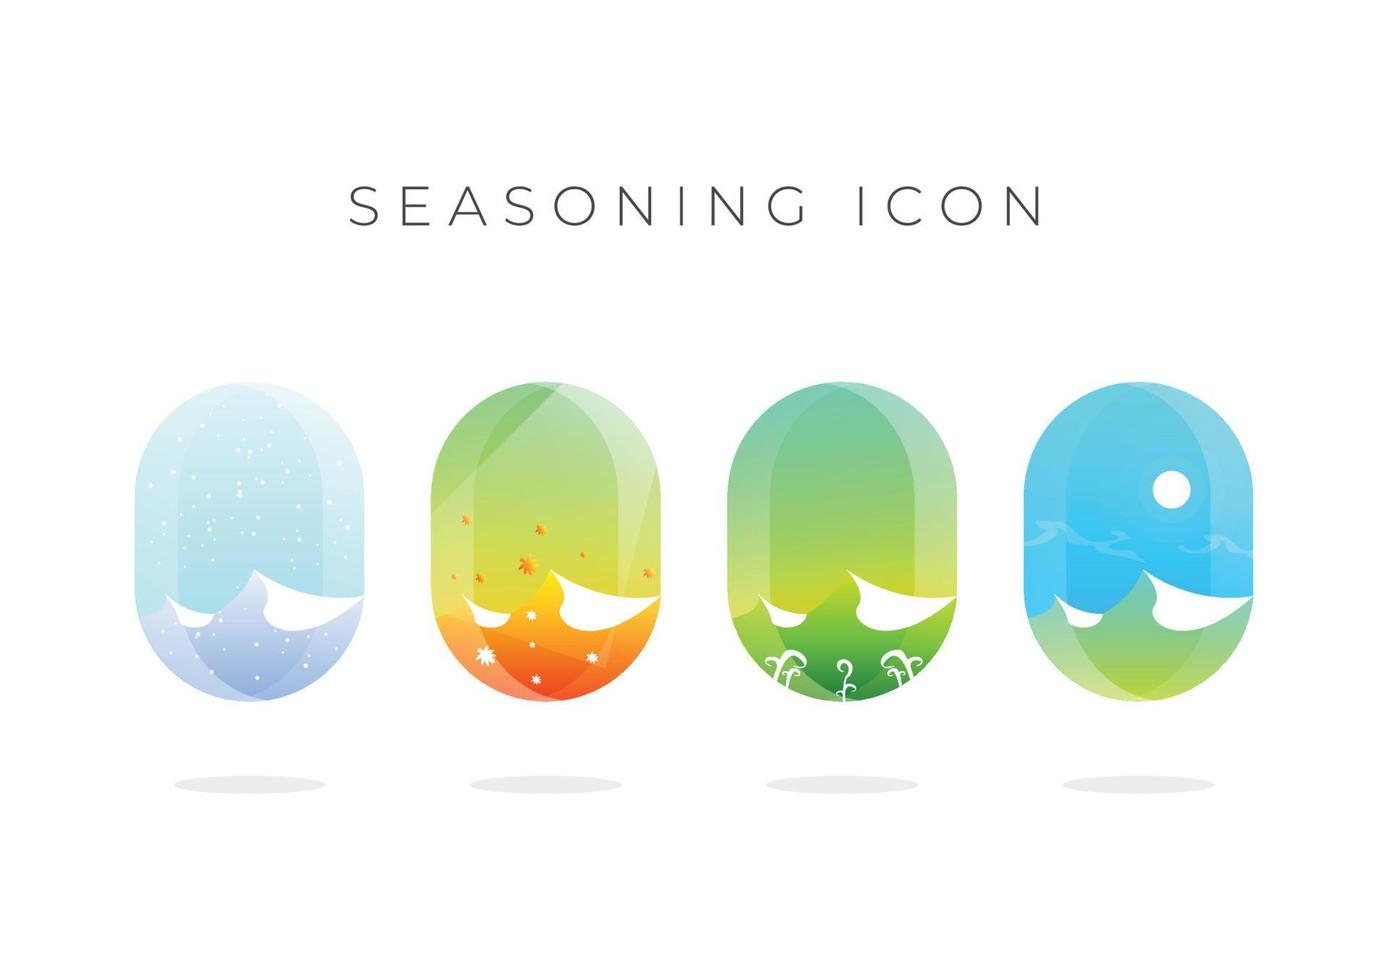 Illustrationsdesign mit vier Jahreszeiten, Symbol mit vier Jahreszeiten, Sommer, Herbst, Winter, Frühling vektor